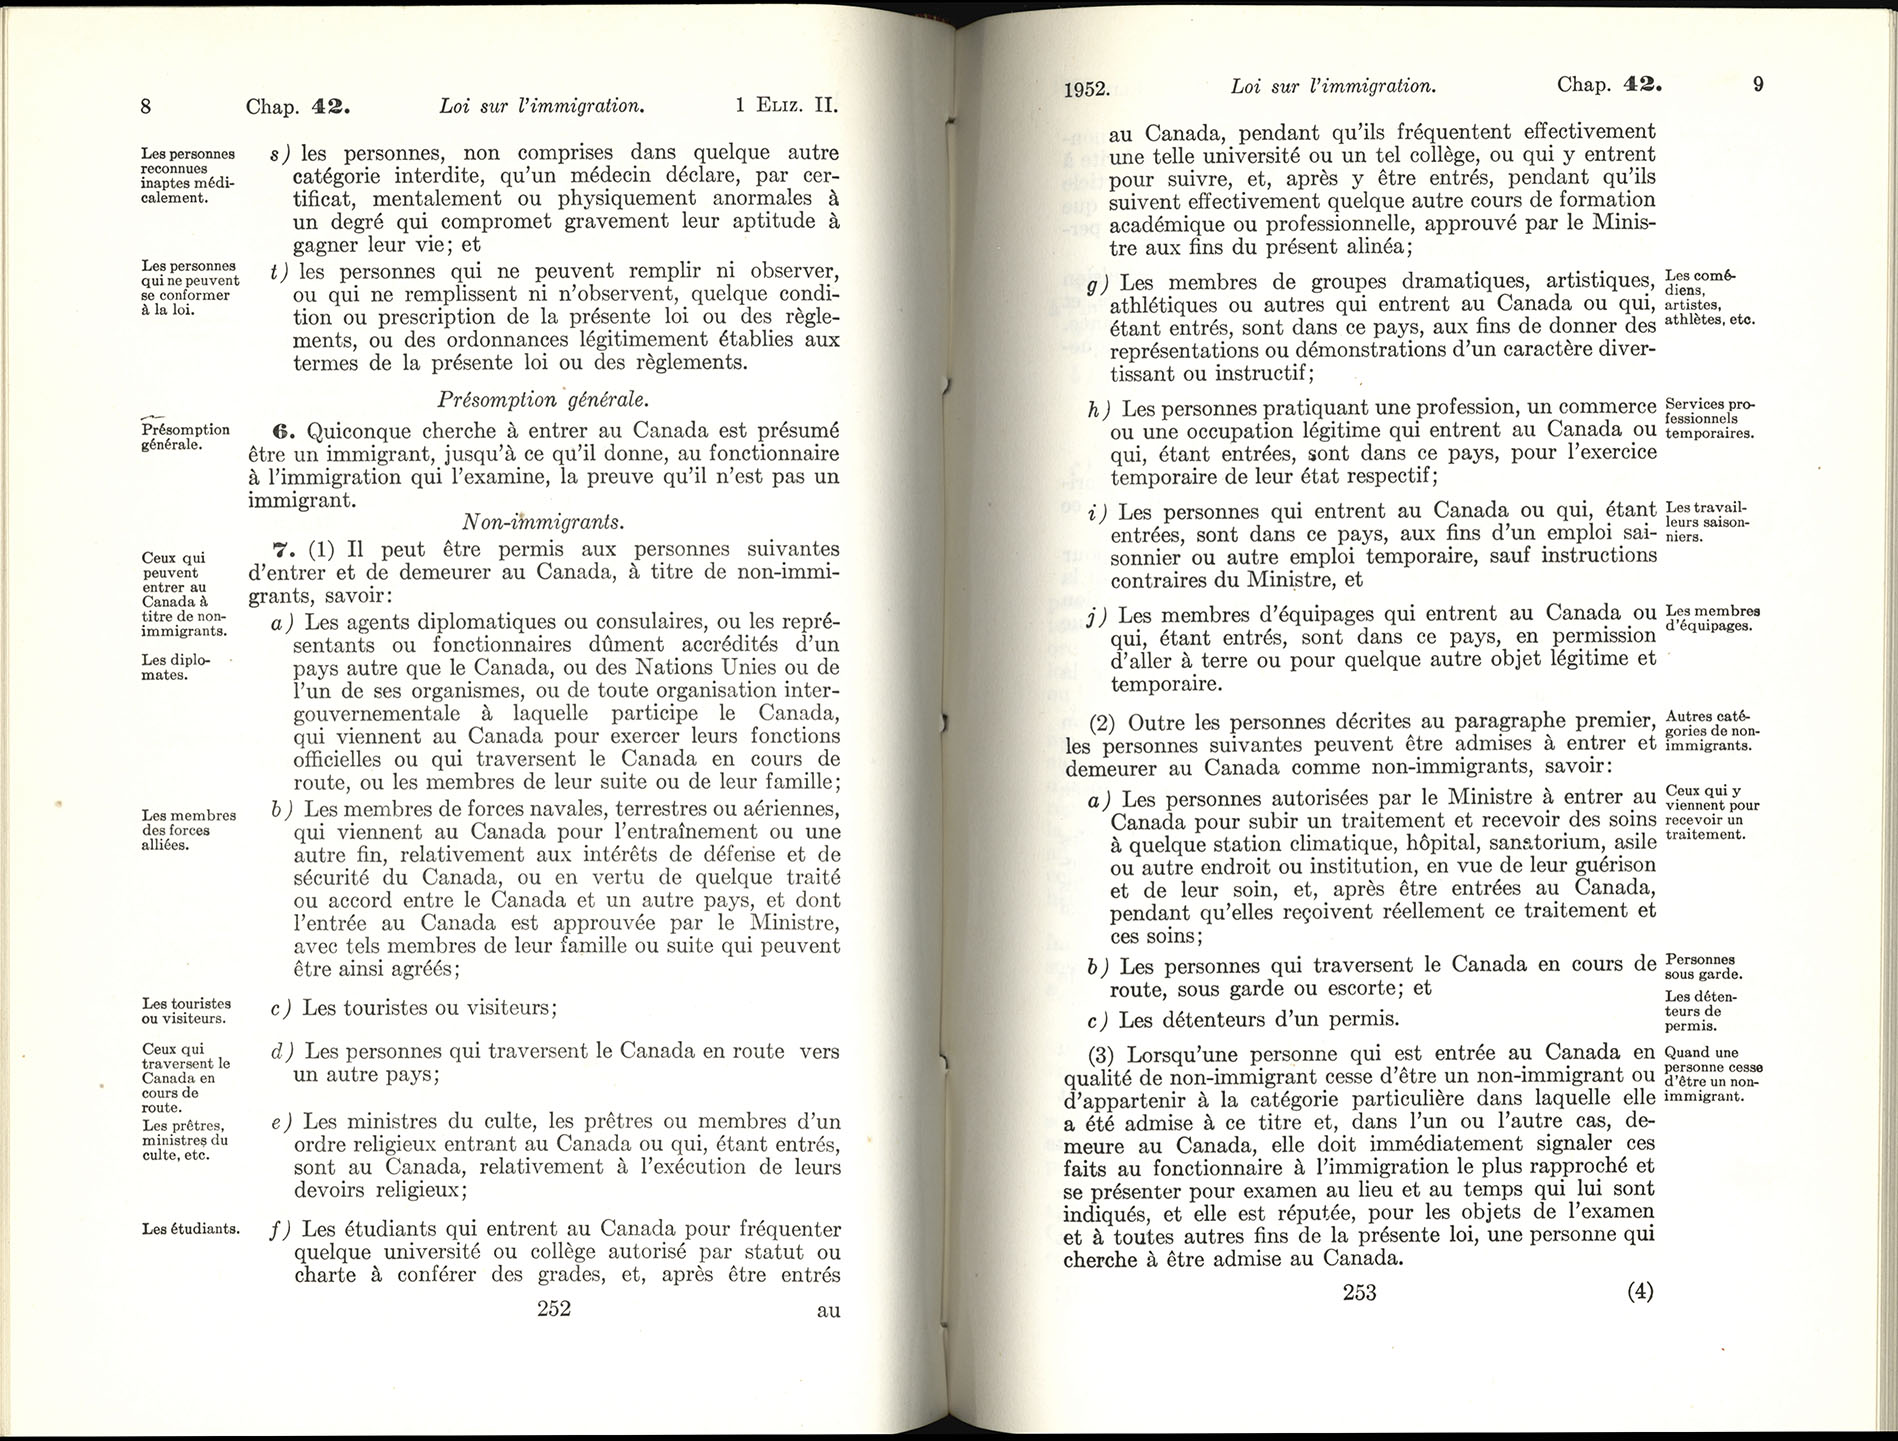 Chap 42 Page 252, 253 Loi sur l’immigration, 1952